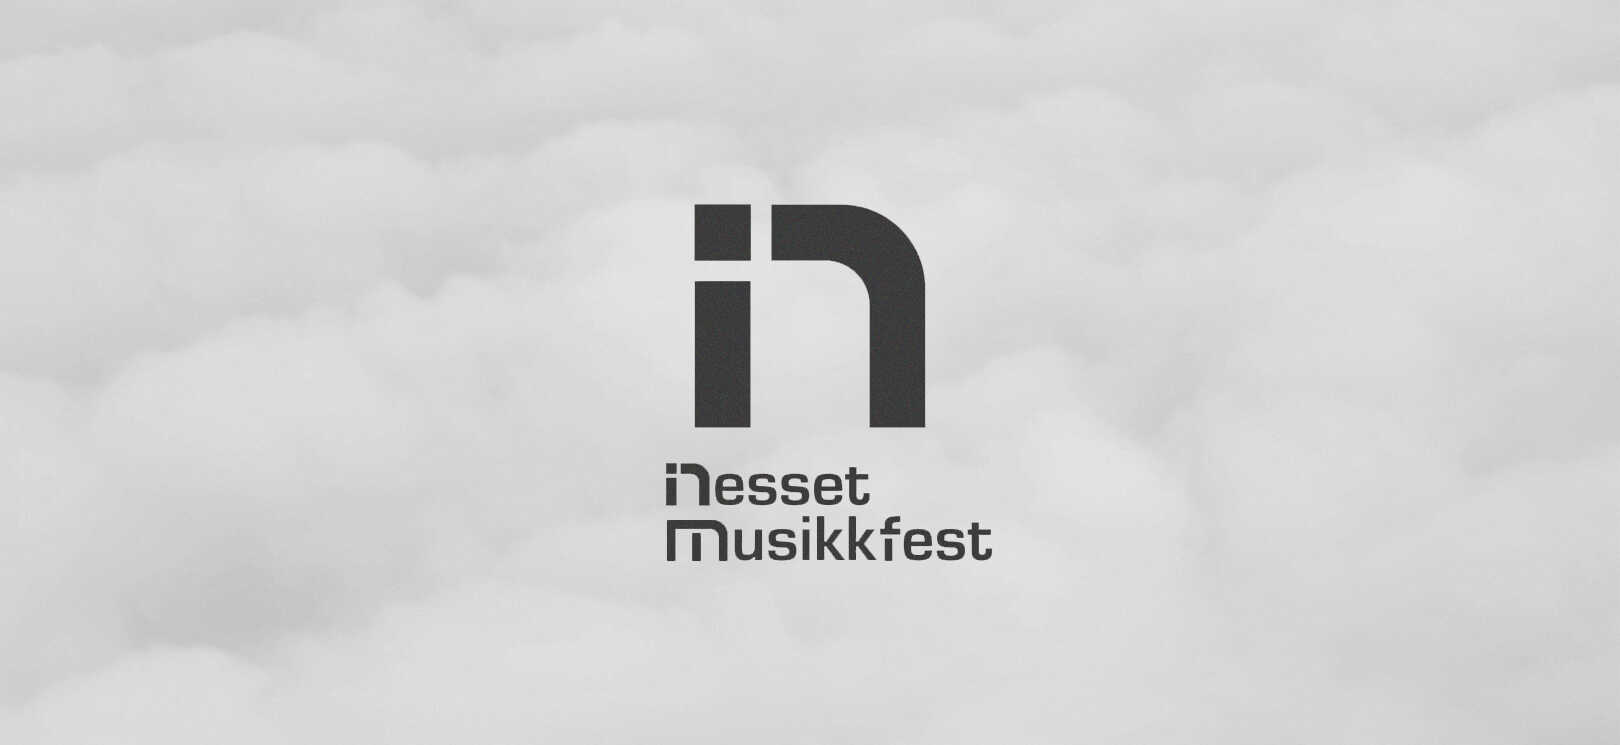 Nesset musikkfest logo fordel